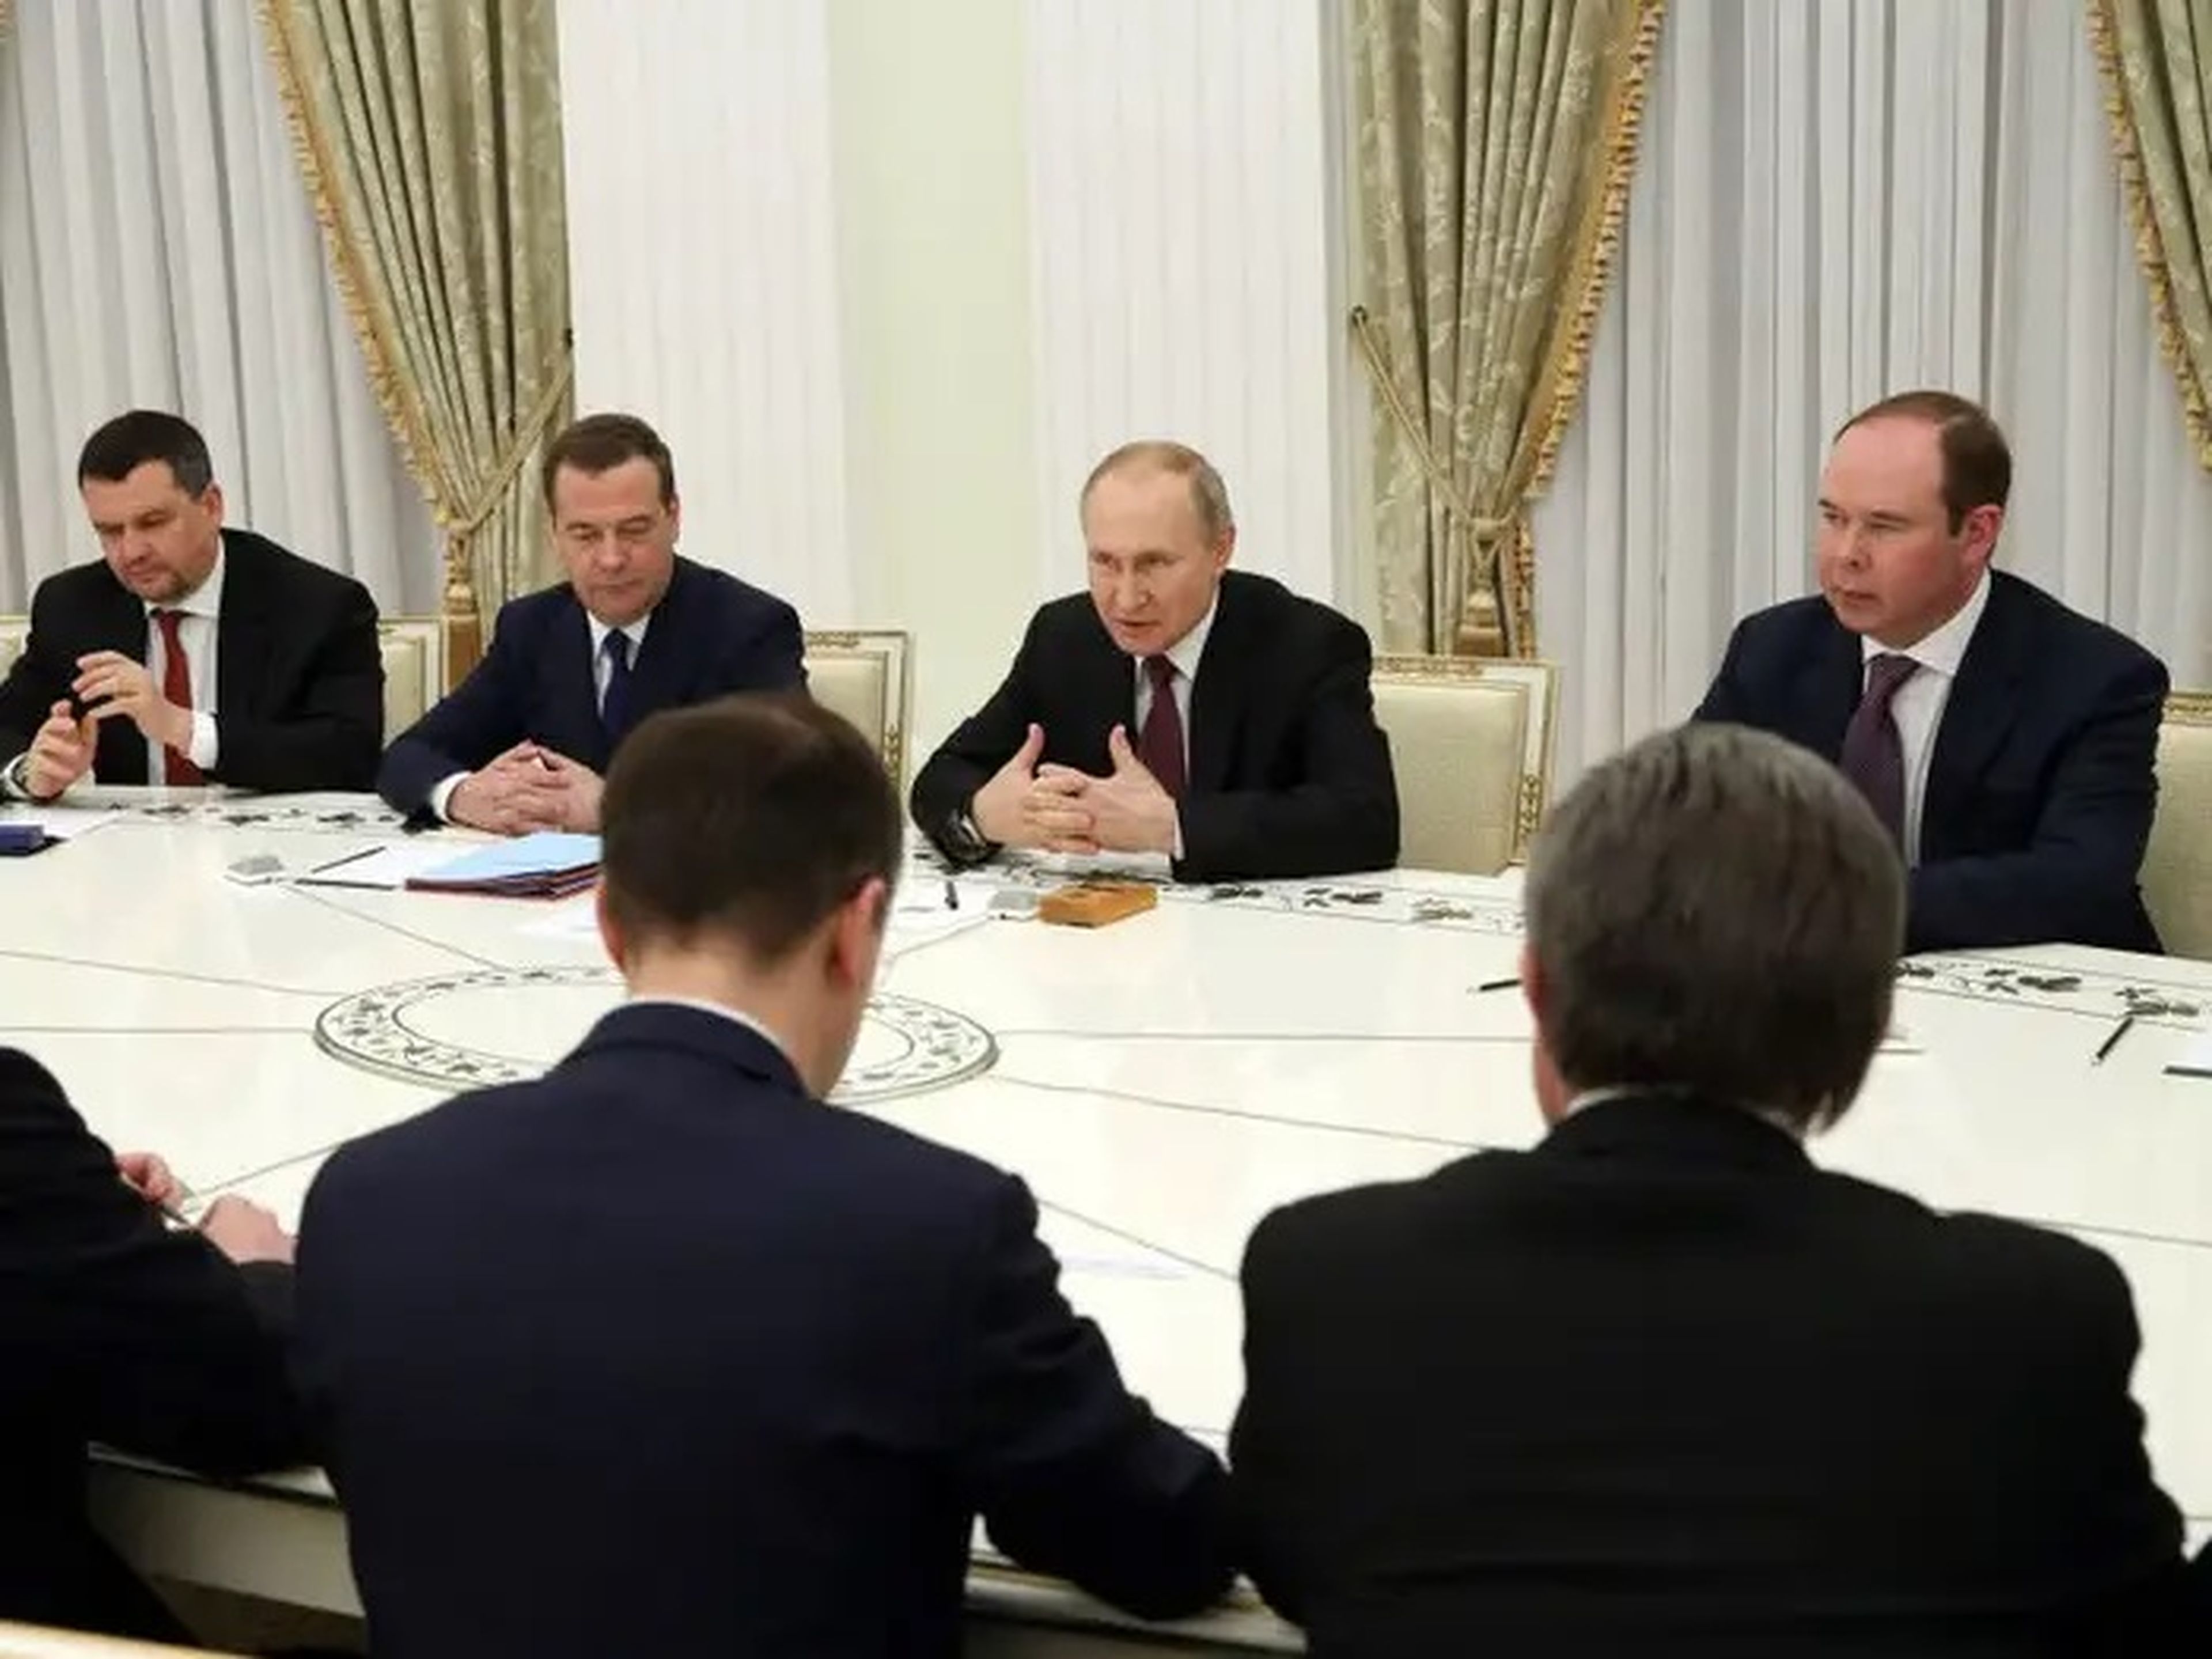 El presidente ruso Vladímir Putin y altos funcionarios, durante una reunión con antiguos miembros del Gabinete en el Kremlin el 29 de enero de 2020 en Moscú (Rusia).